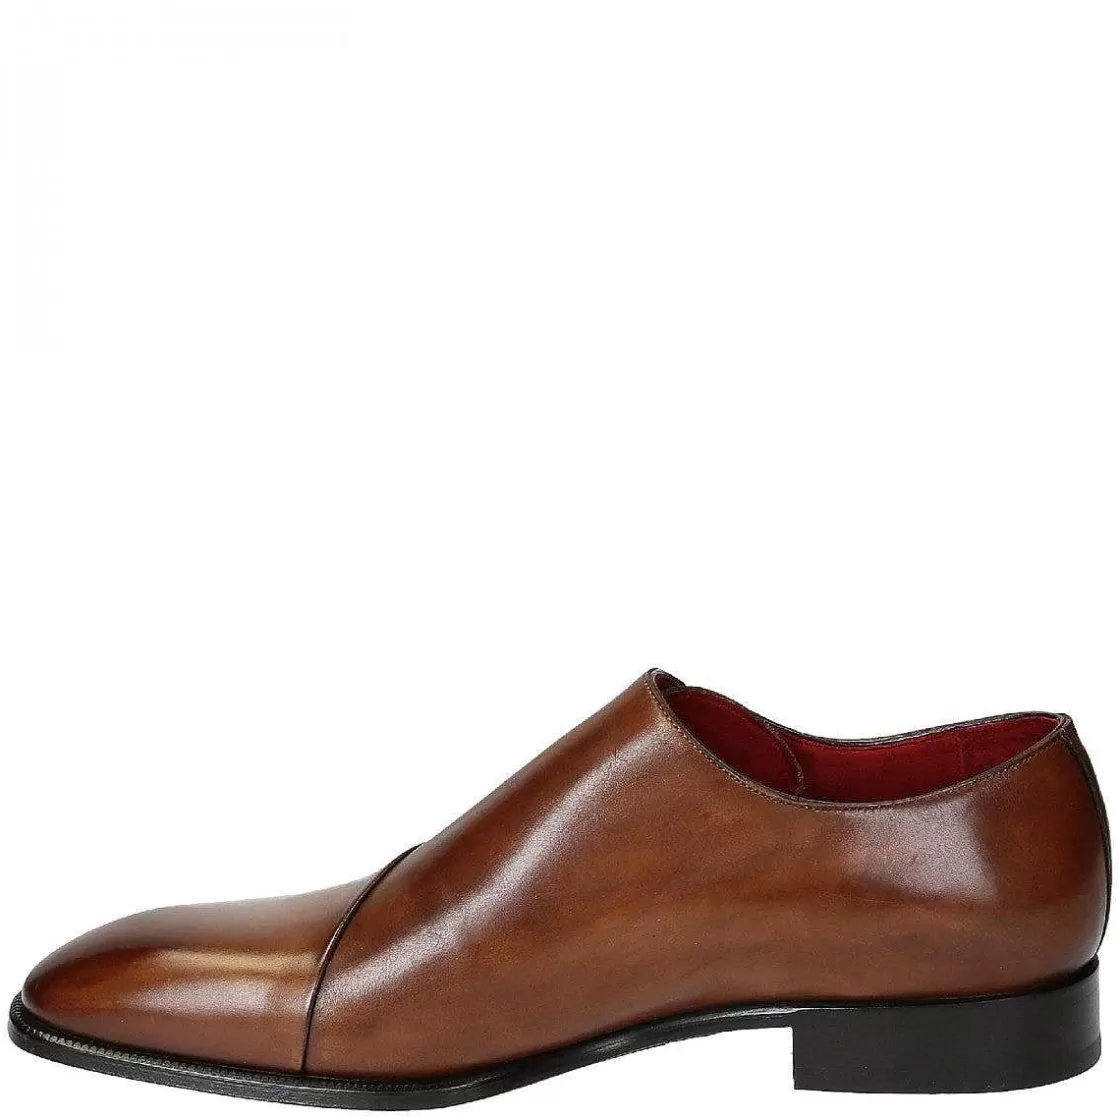 Leonardo Light Brown Leather Dress Shoes For Men Best